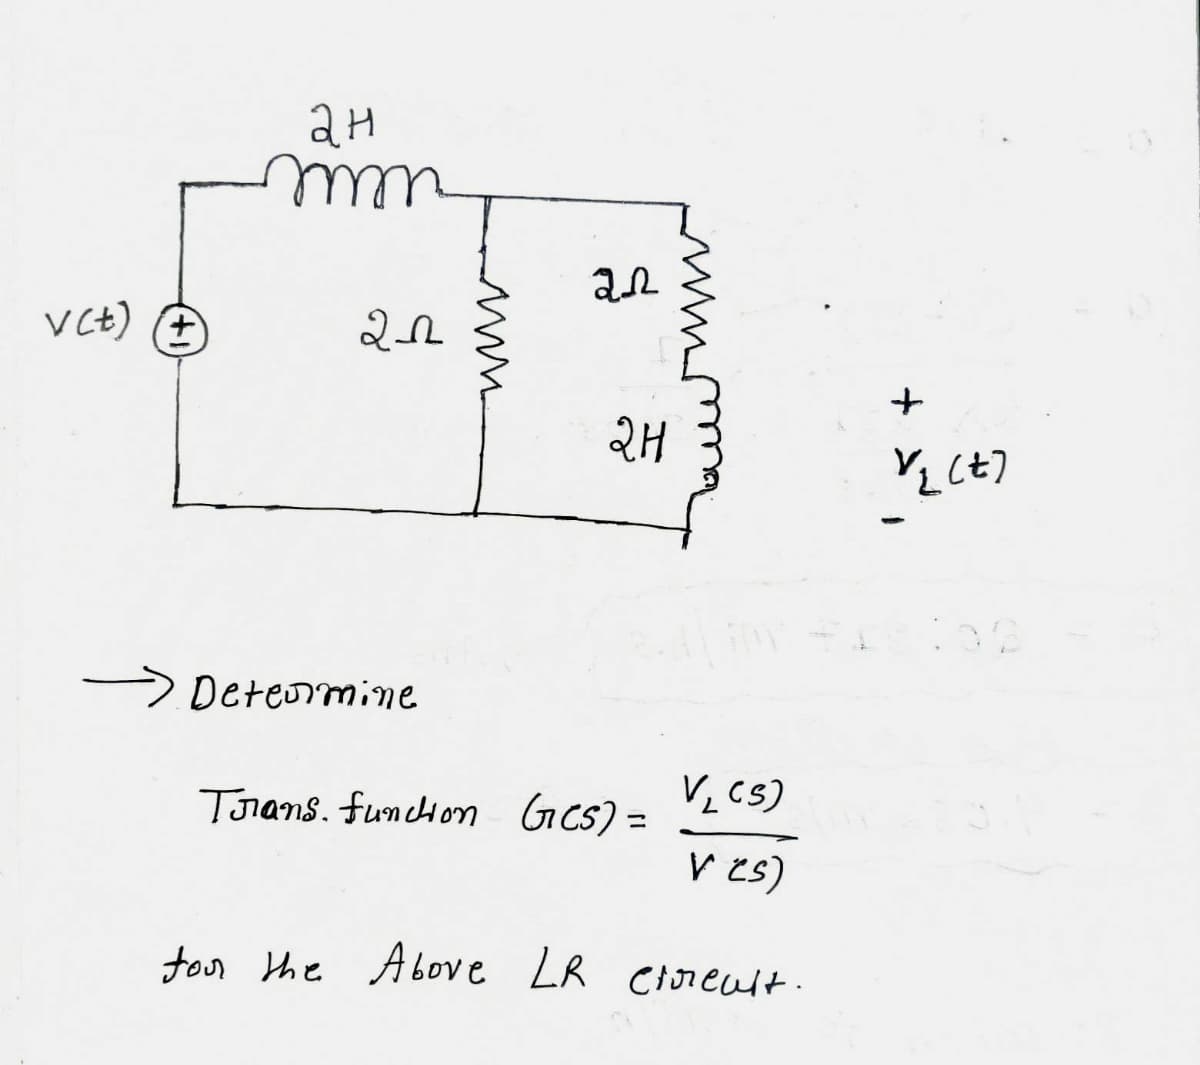 v(t)
+
ан
mm
20
→ Determine
www
ал
2.H
V₂ (S)
V (s)
for the Above LR etreult.
Trans. fundon GCS) =
+
V/2 (+7
30